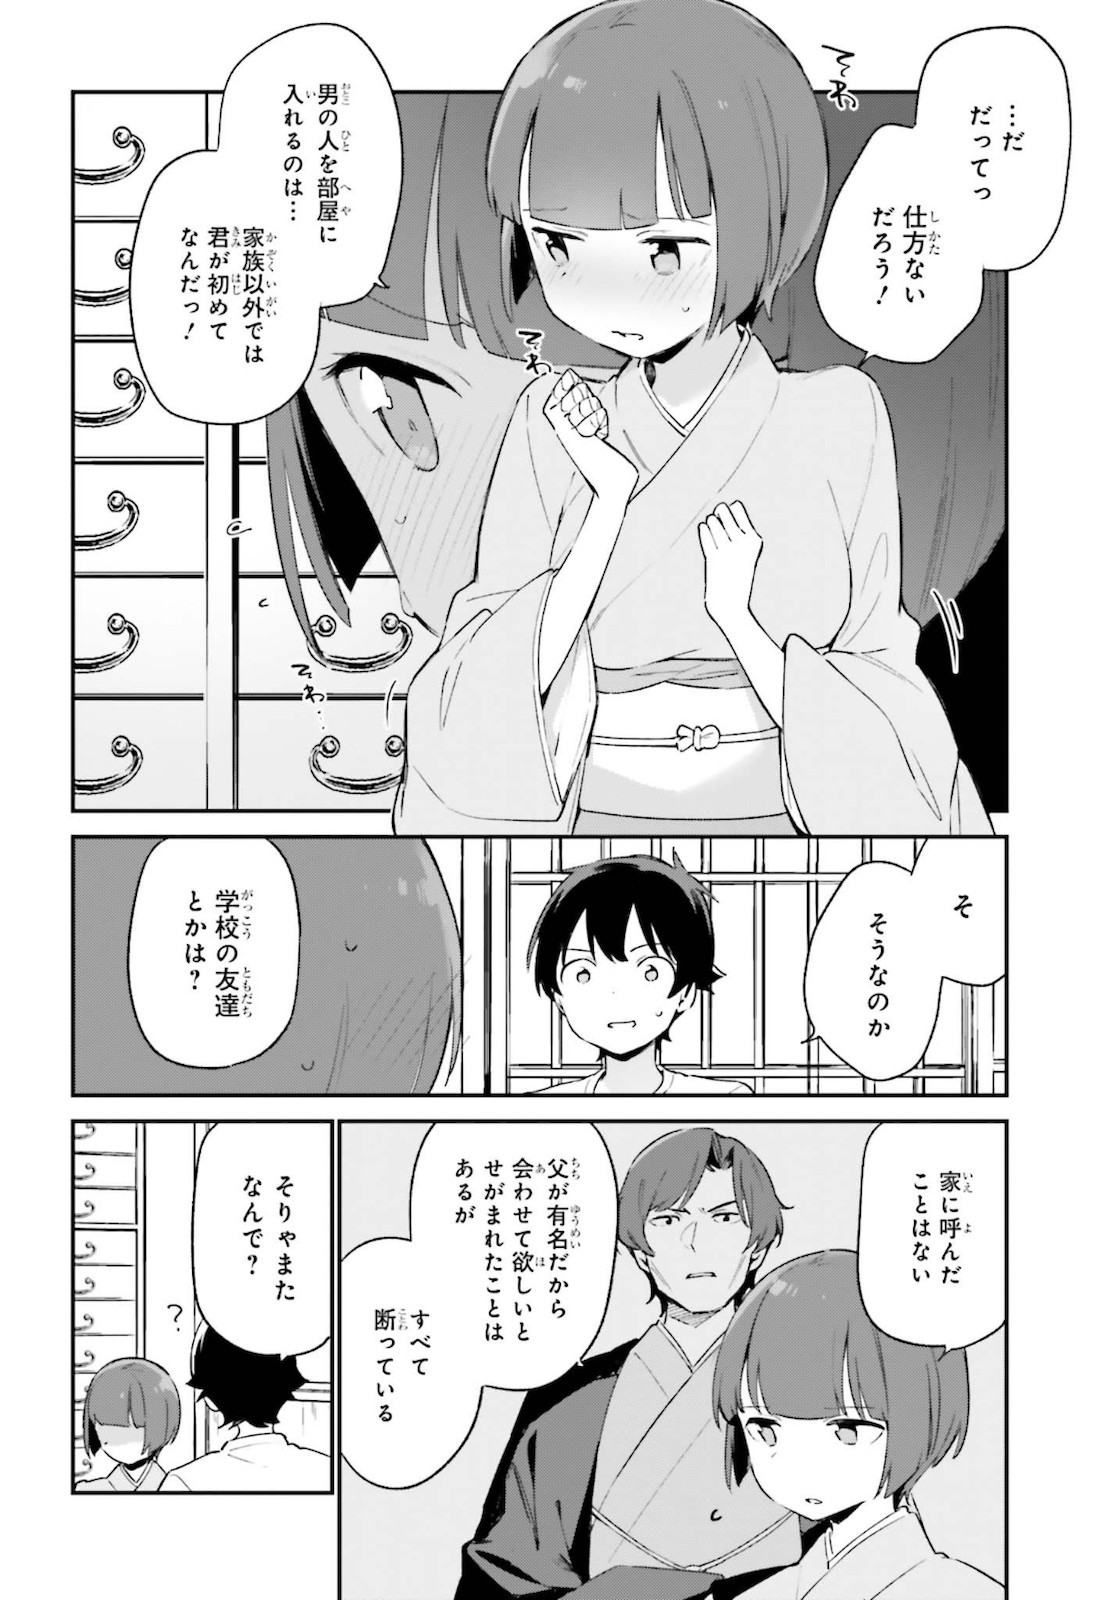 Ero Manga Sensei - Chapter 71 - Page 4